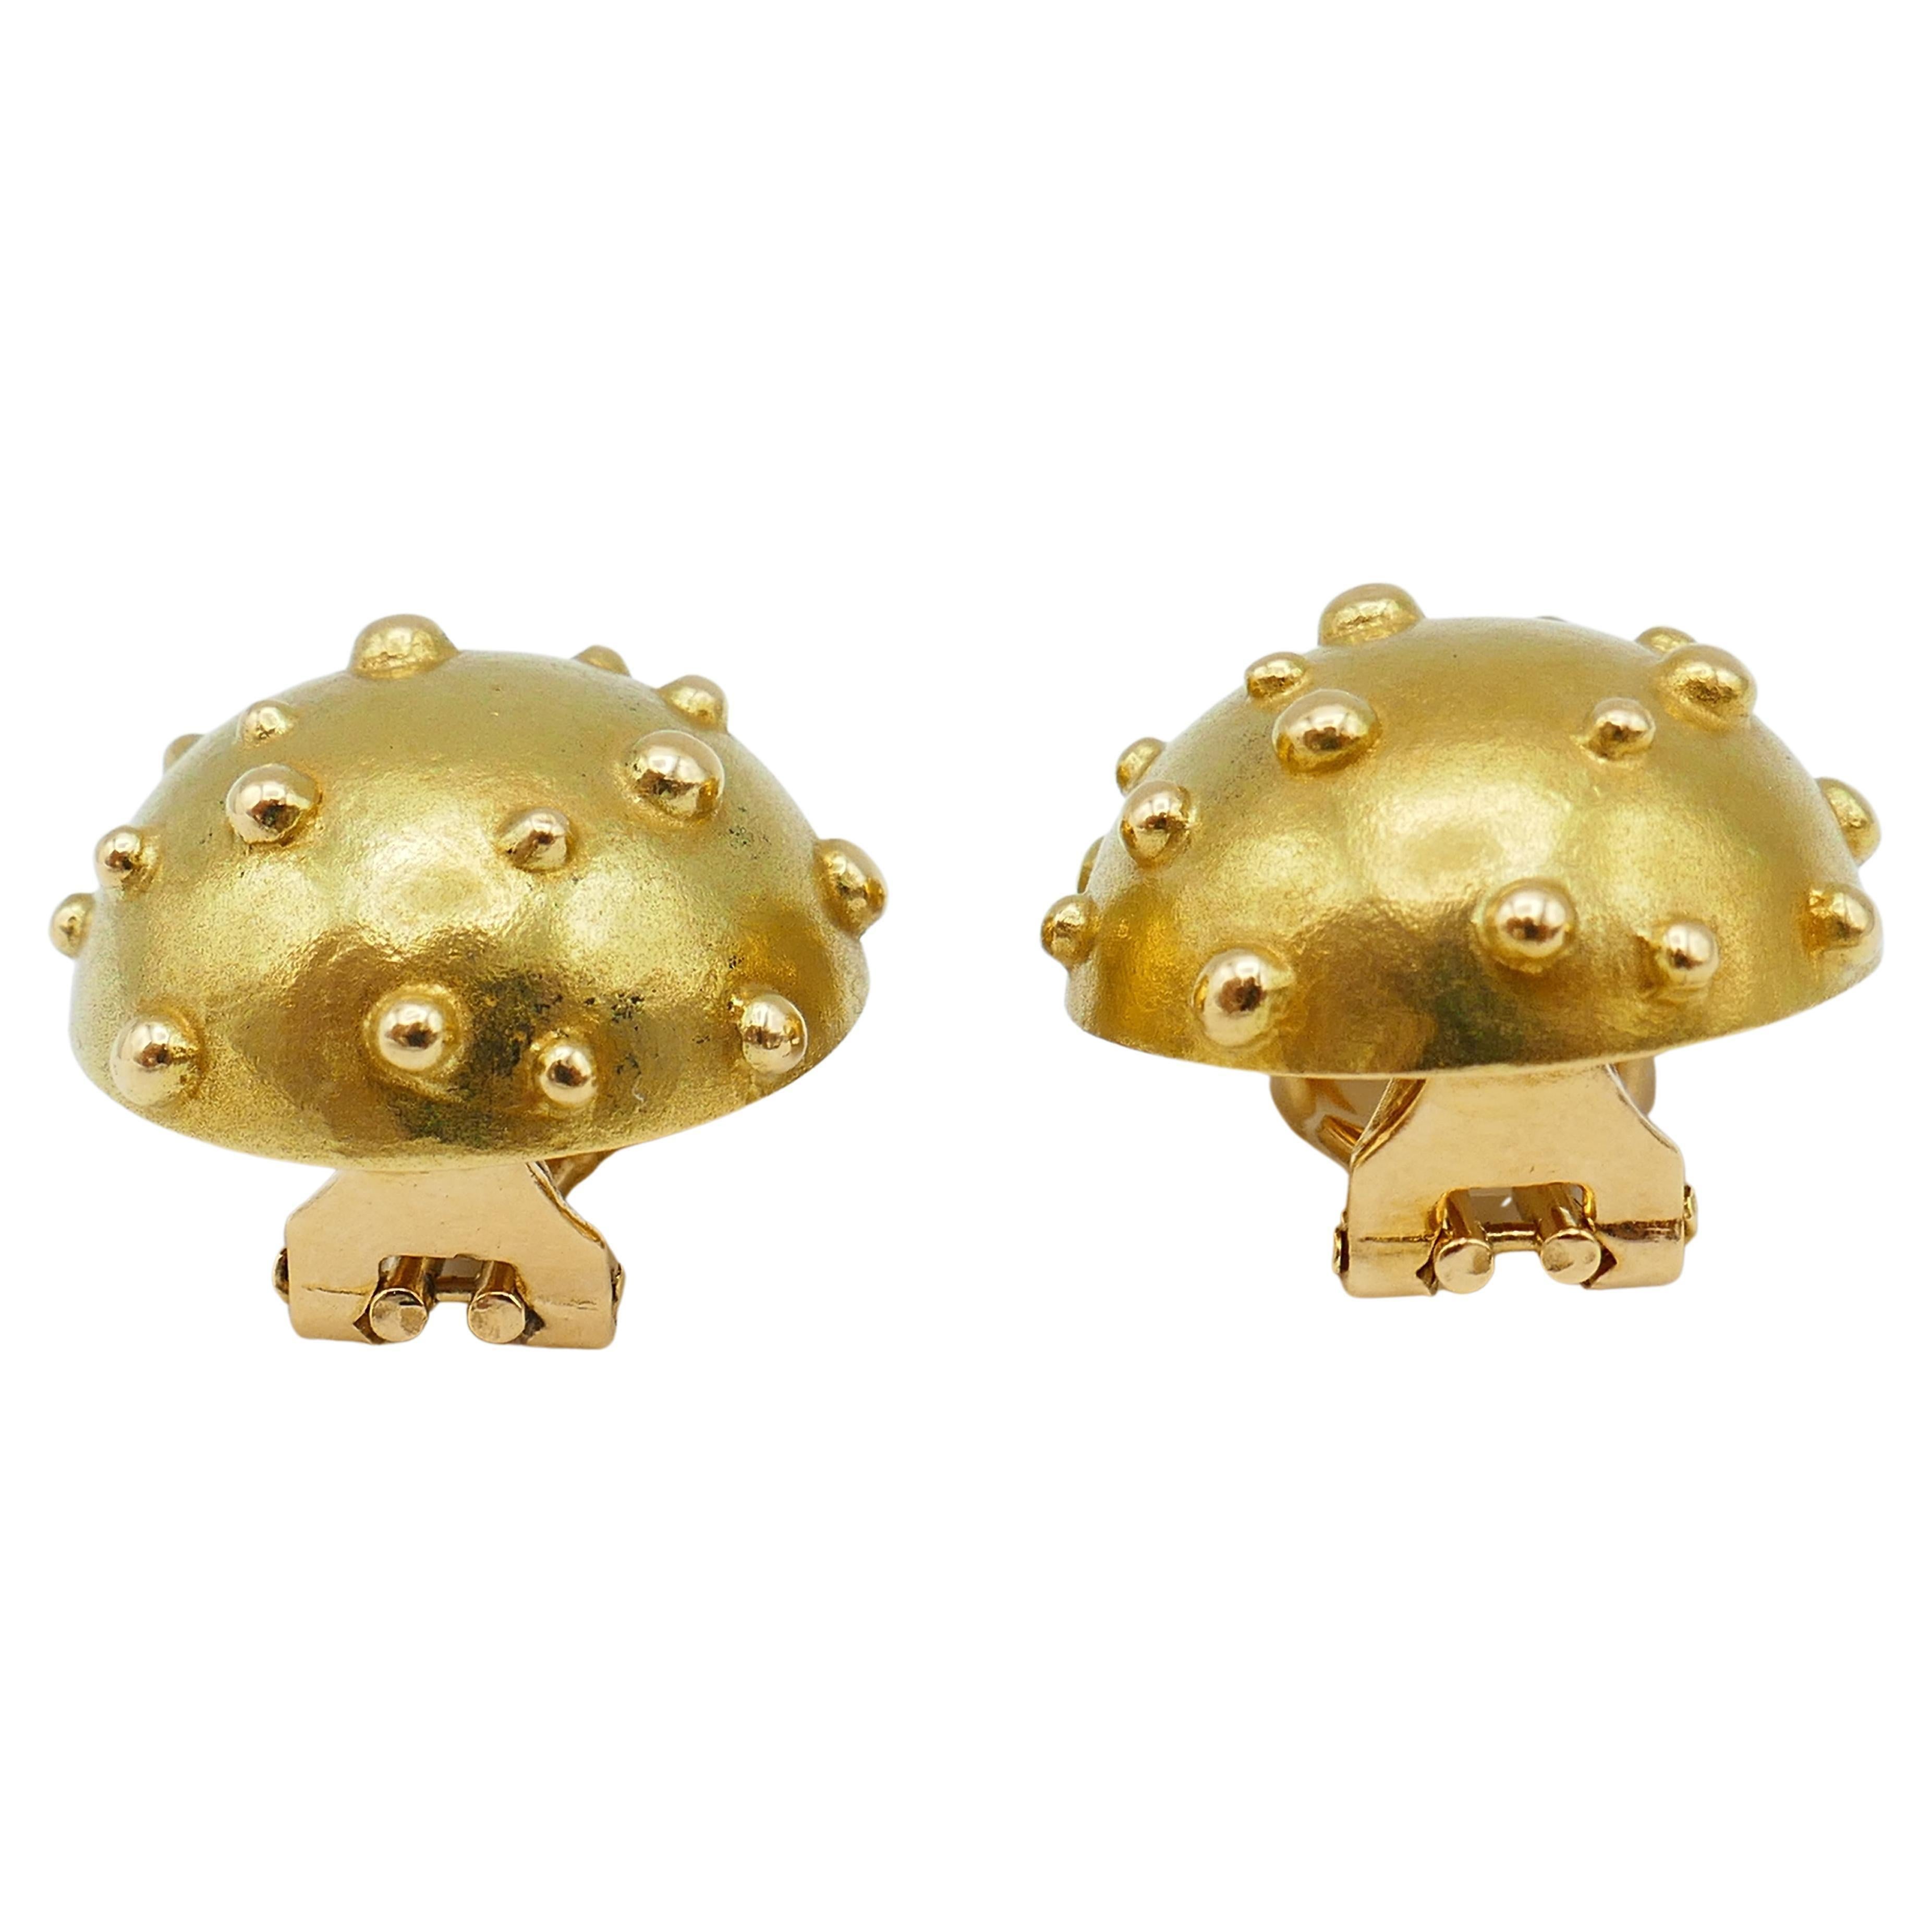 Une paire mignonne mais raffinée de Tiffany & Co. Boucles d'oreilles dorées Dot Mushroom. 
Les boucles d'oreilles ont un aspect simple et pur, mais elles sont amusantes, éloquentes et visibles par conception.
Notez la forme convexe d'un dôme et la